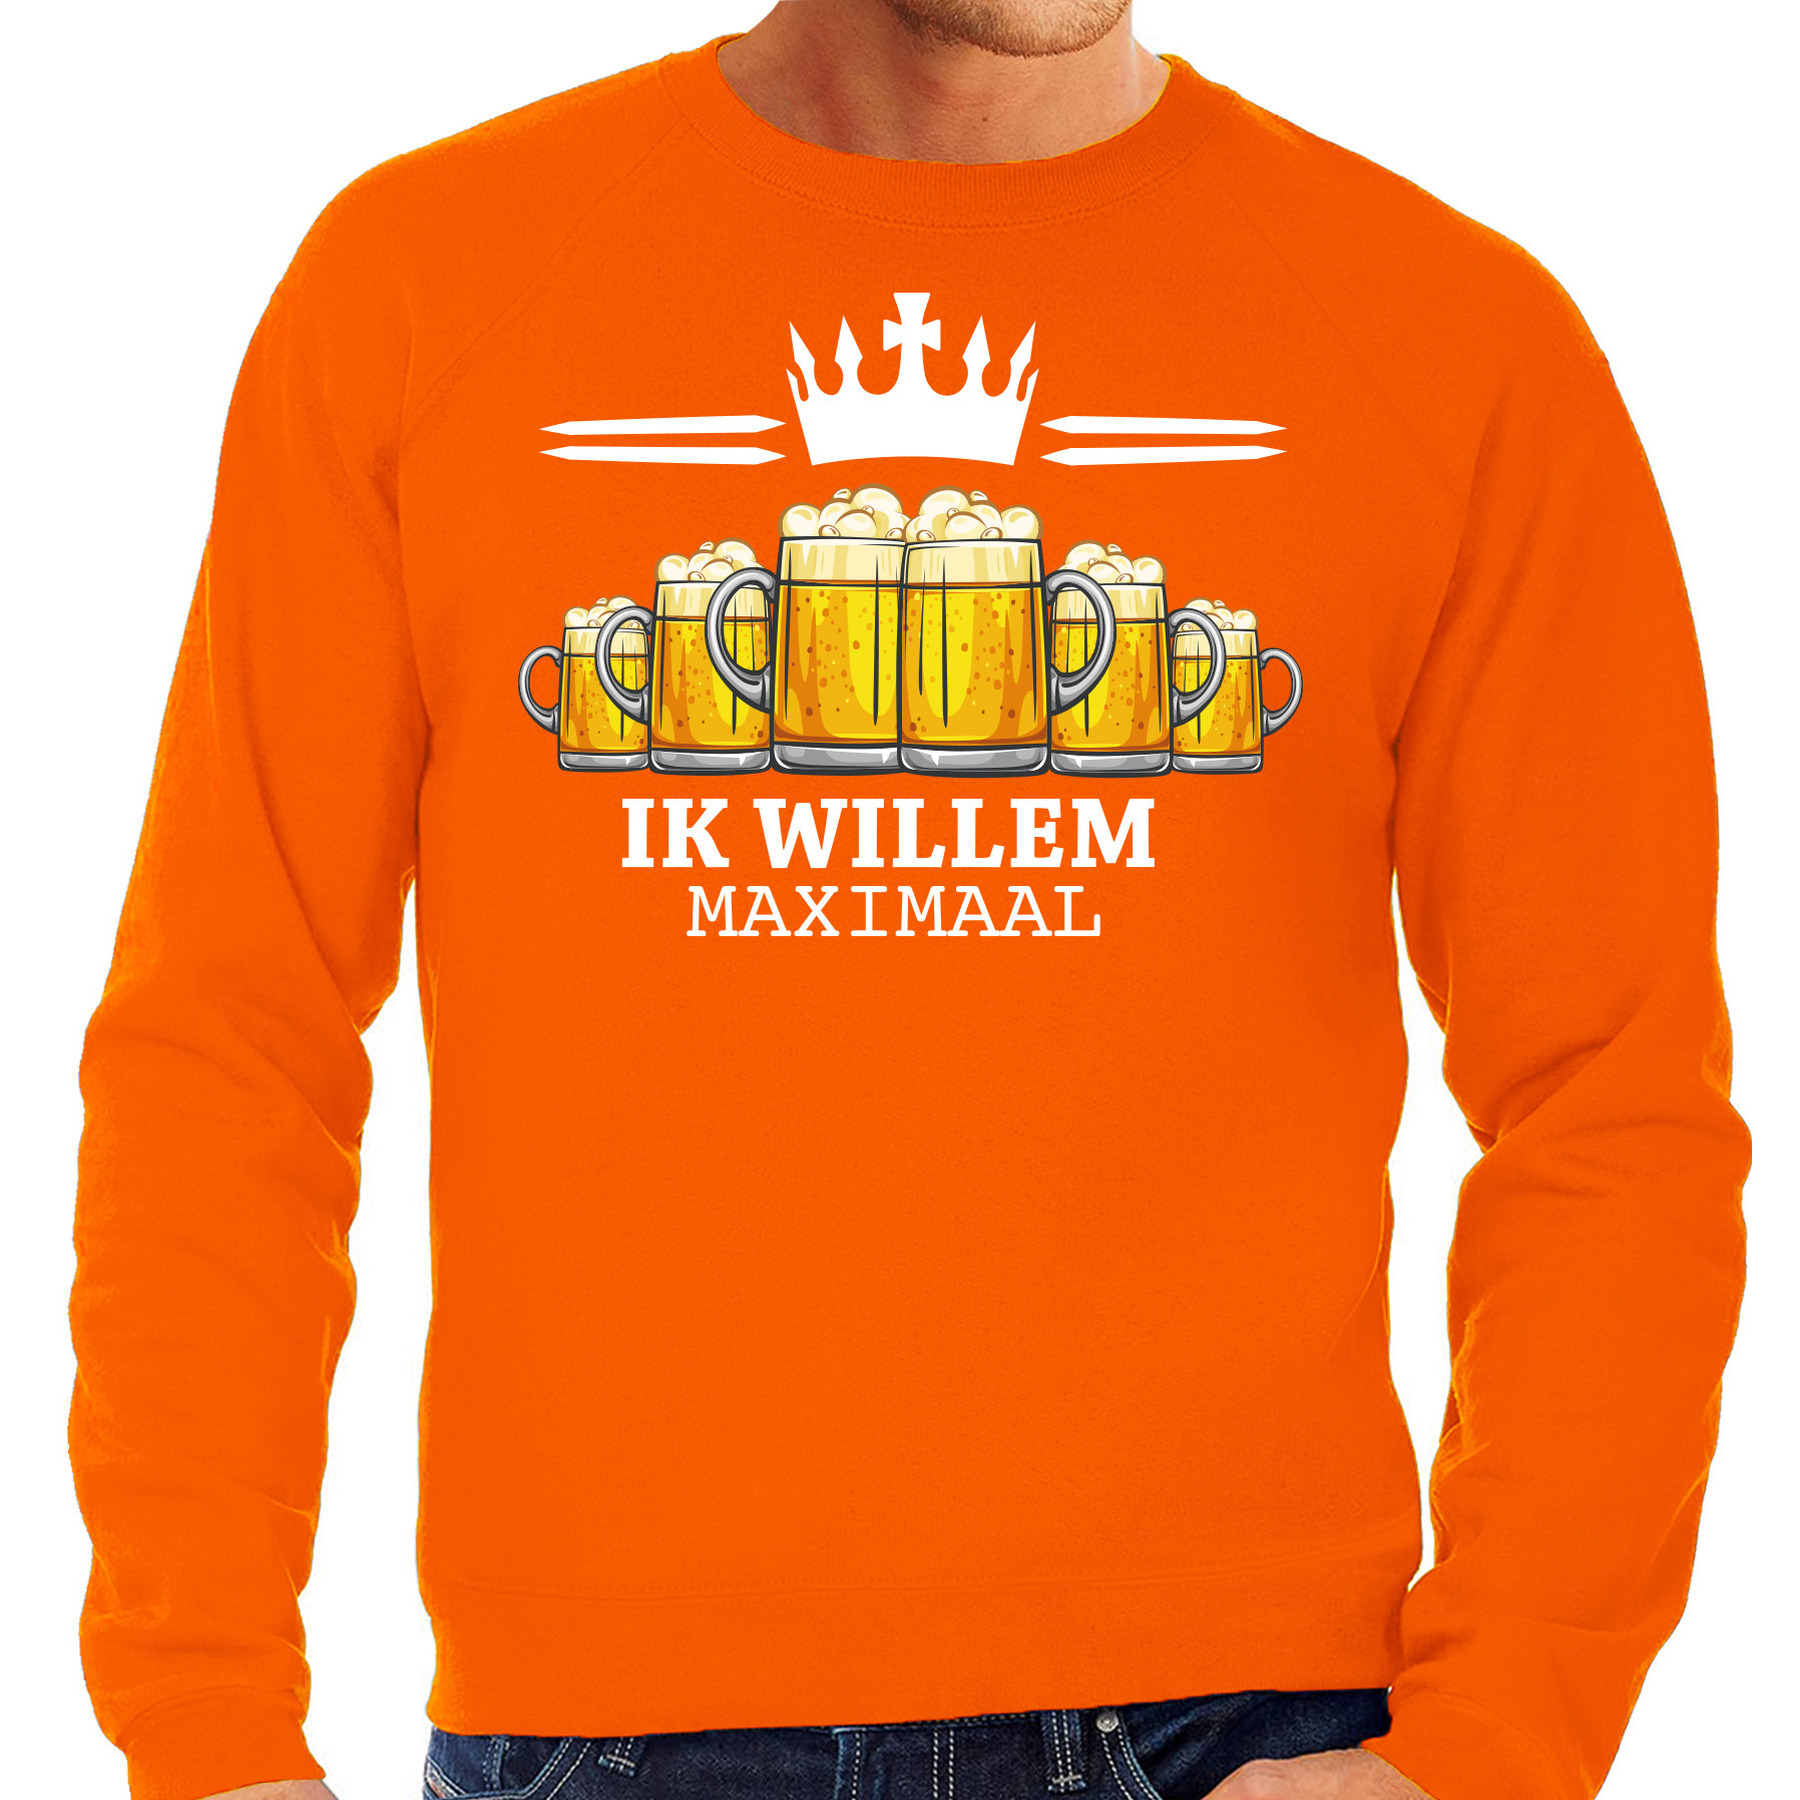 Koningsdag sweater voor heren bier, ik willem oranje feestkleding